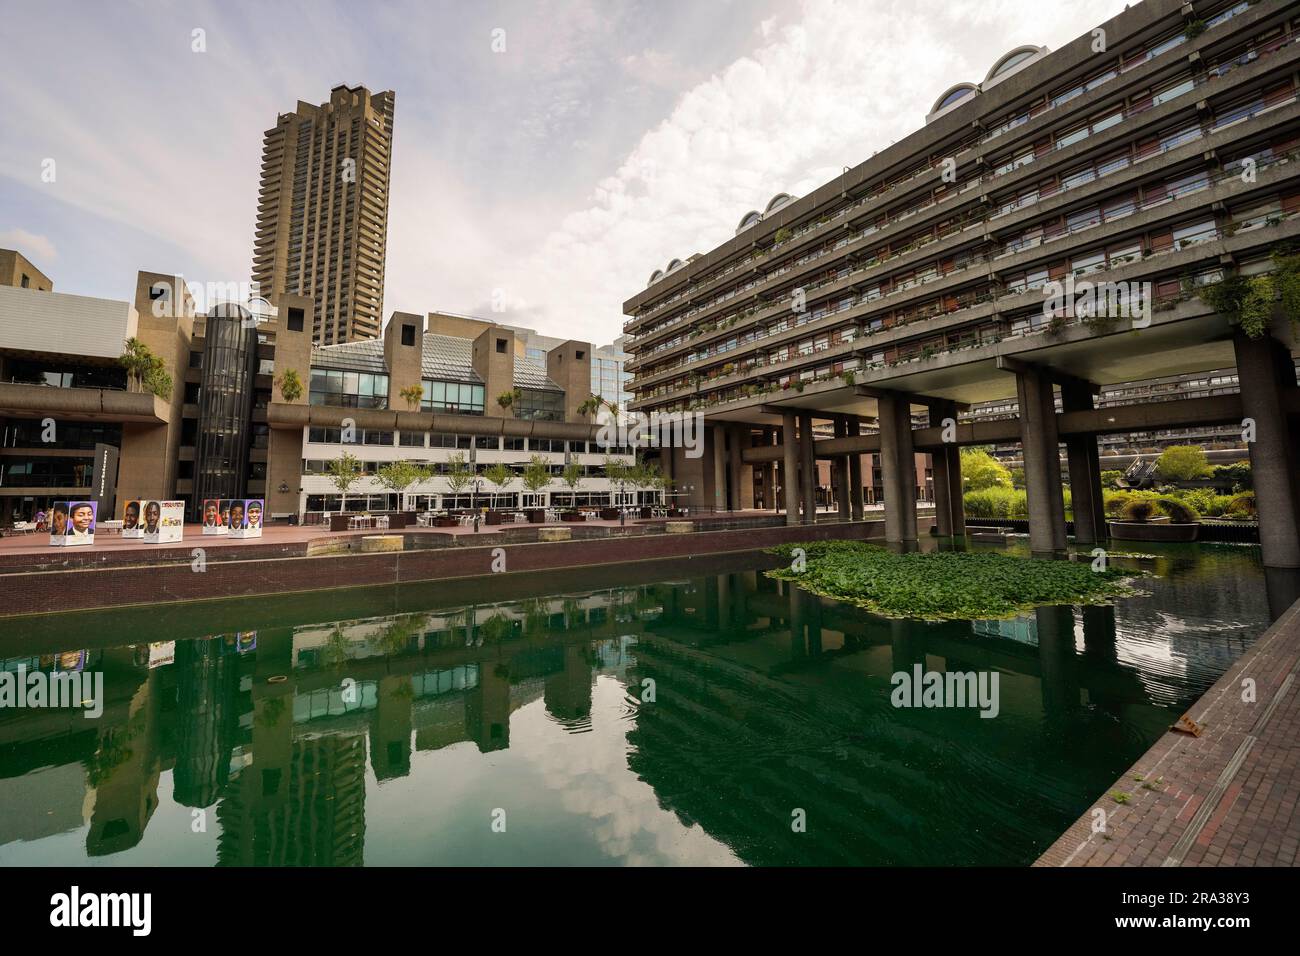 Barbican Centre, Barbican Estate in London, ein Symbol der Brutalistischen Architektur und ein architektonischer Schatz. Ein Wohn-, Kunst- und Kulturzentrum. Stockfoto